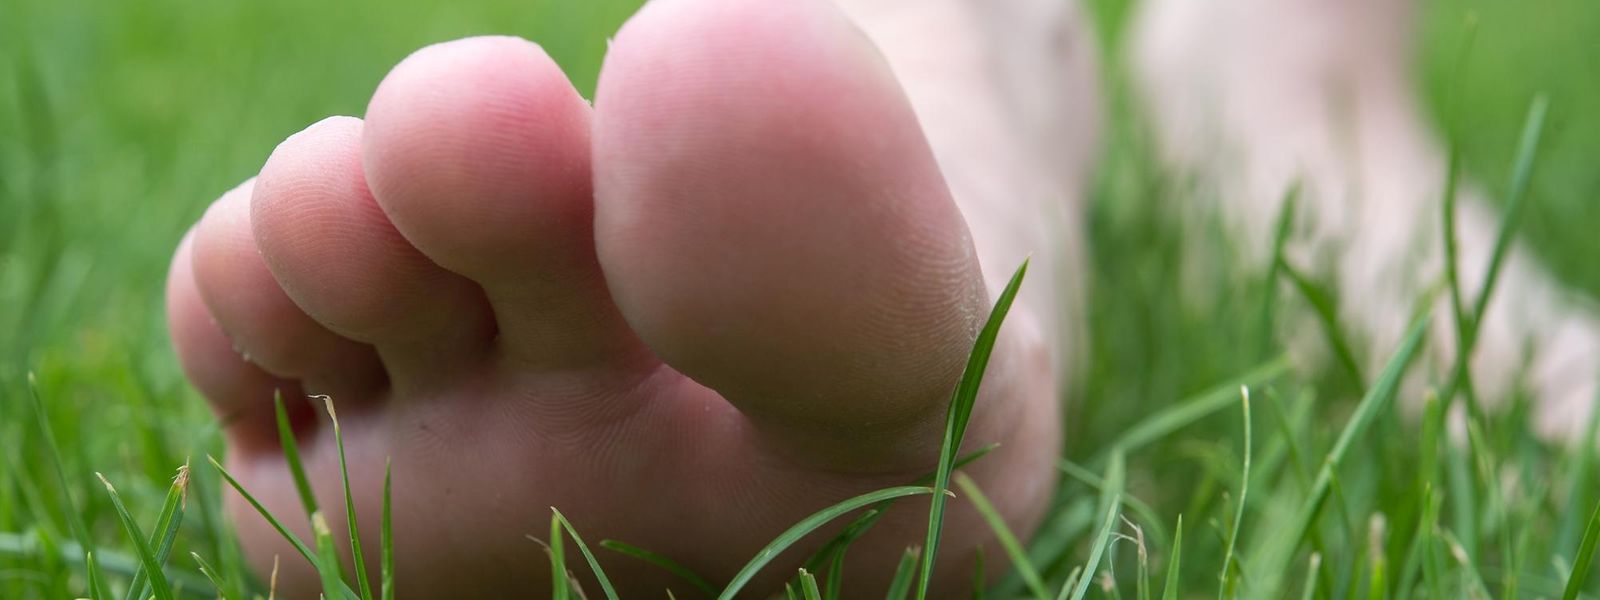 Eine Achtsamkeitsübung für warme Tage: langsam ein paar Schritte barfuß übers Gras gehen. Beim Aufsetzen der Füße auf das Abrollen achten und die Anspannung loslassen.